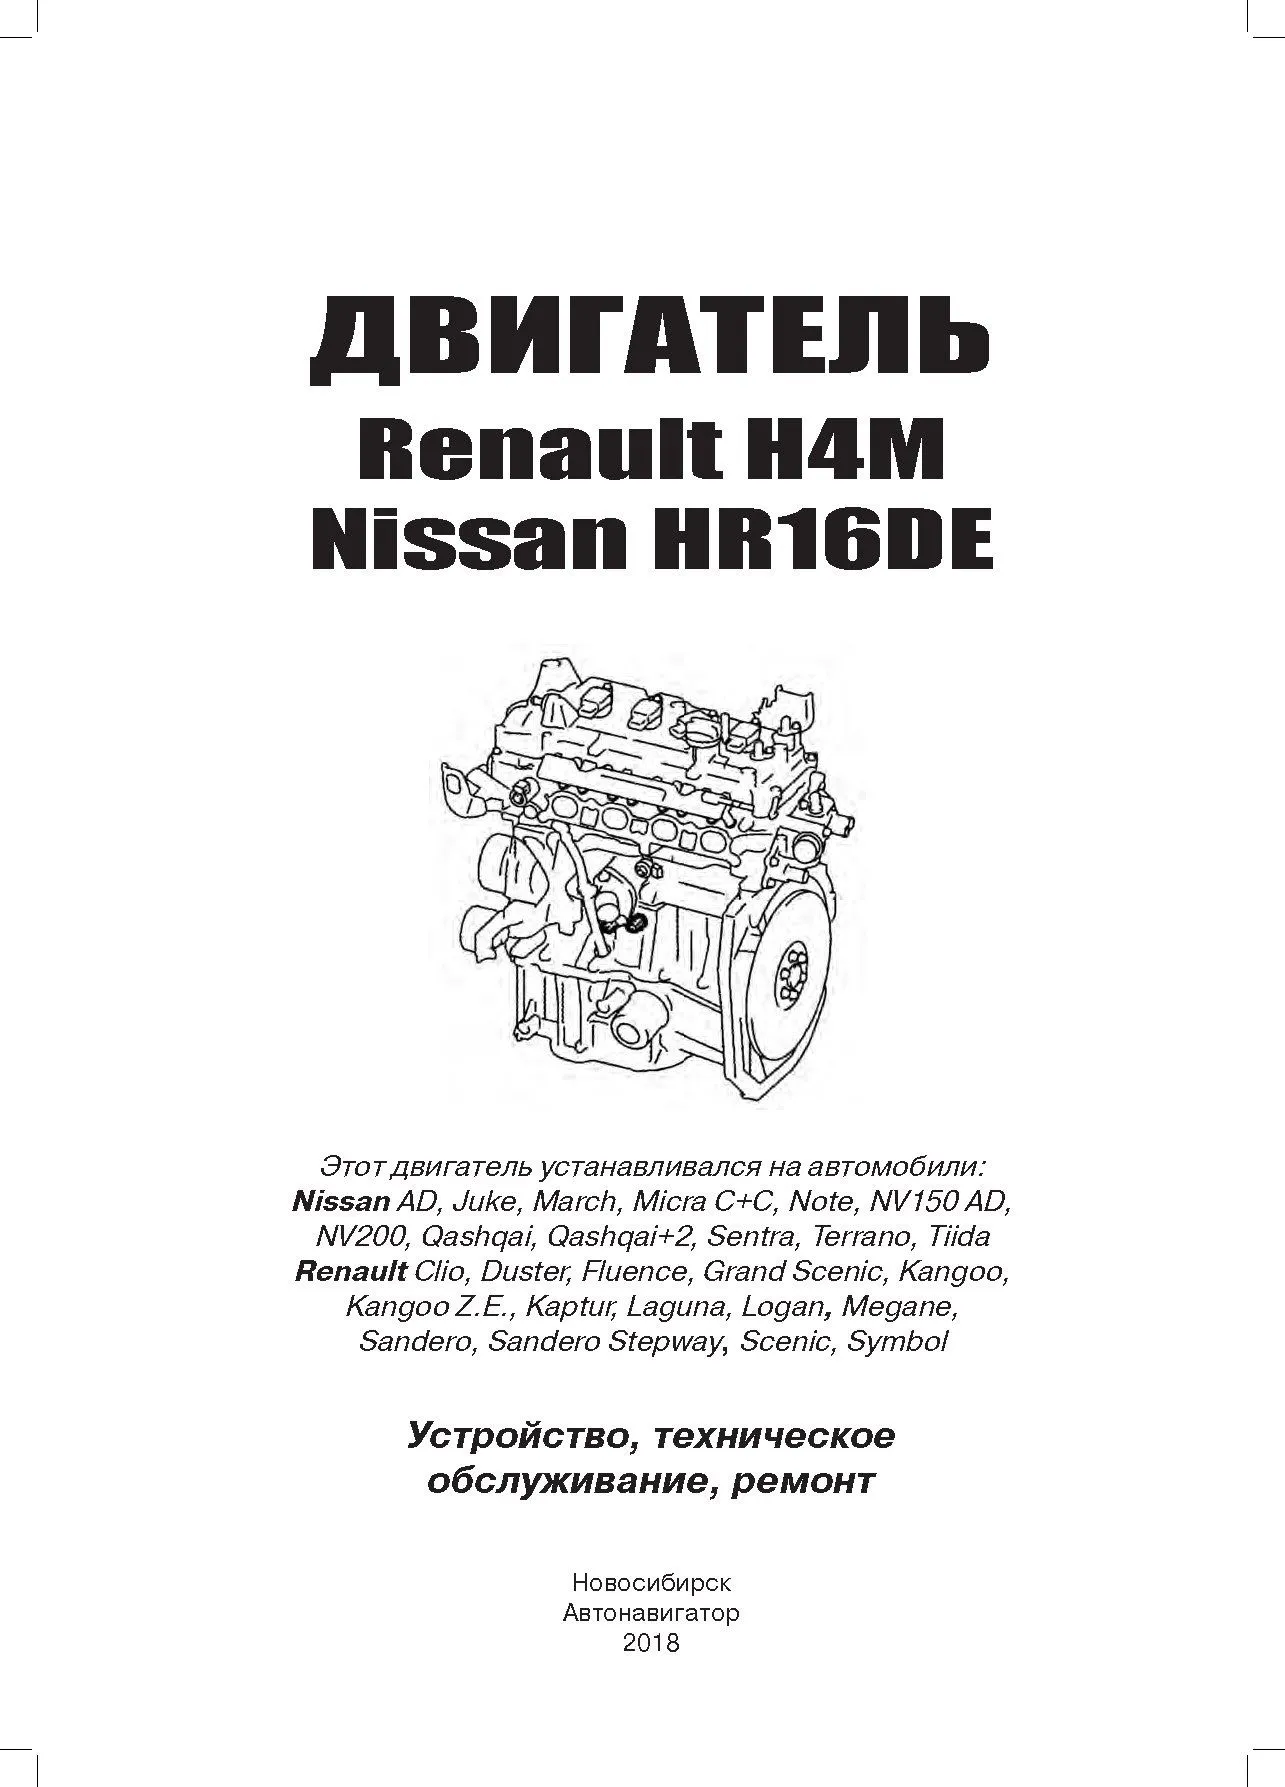 Книга двигатели Nissan HR16DE и Renault H4M, электросхемы. Руководство по ремонту и эксплуатации. Автонавигатор